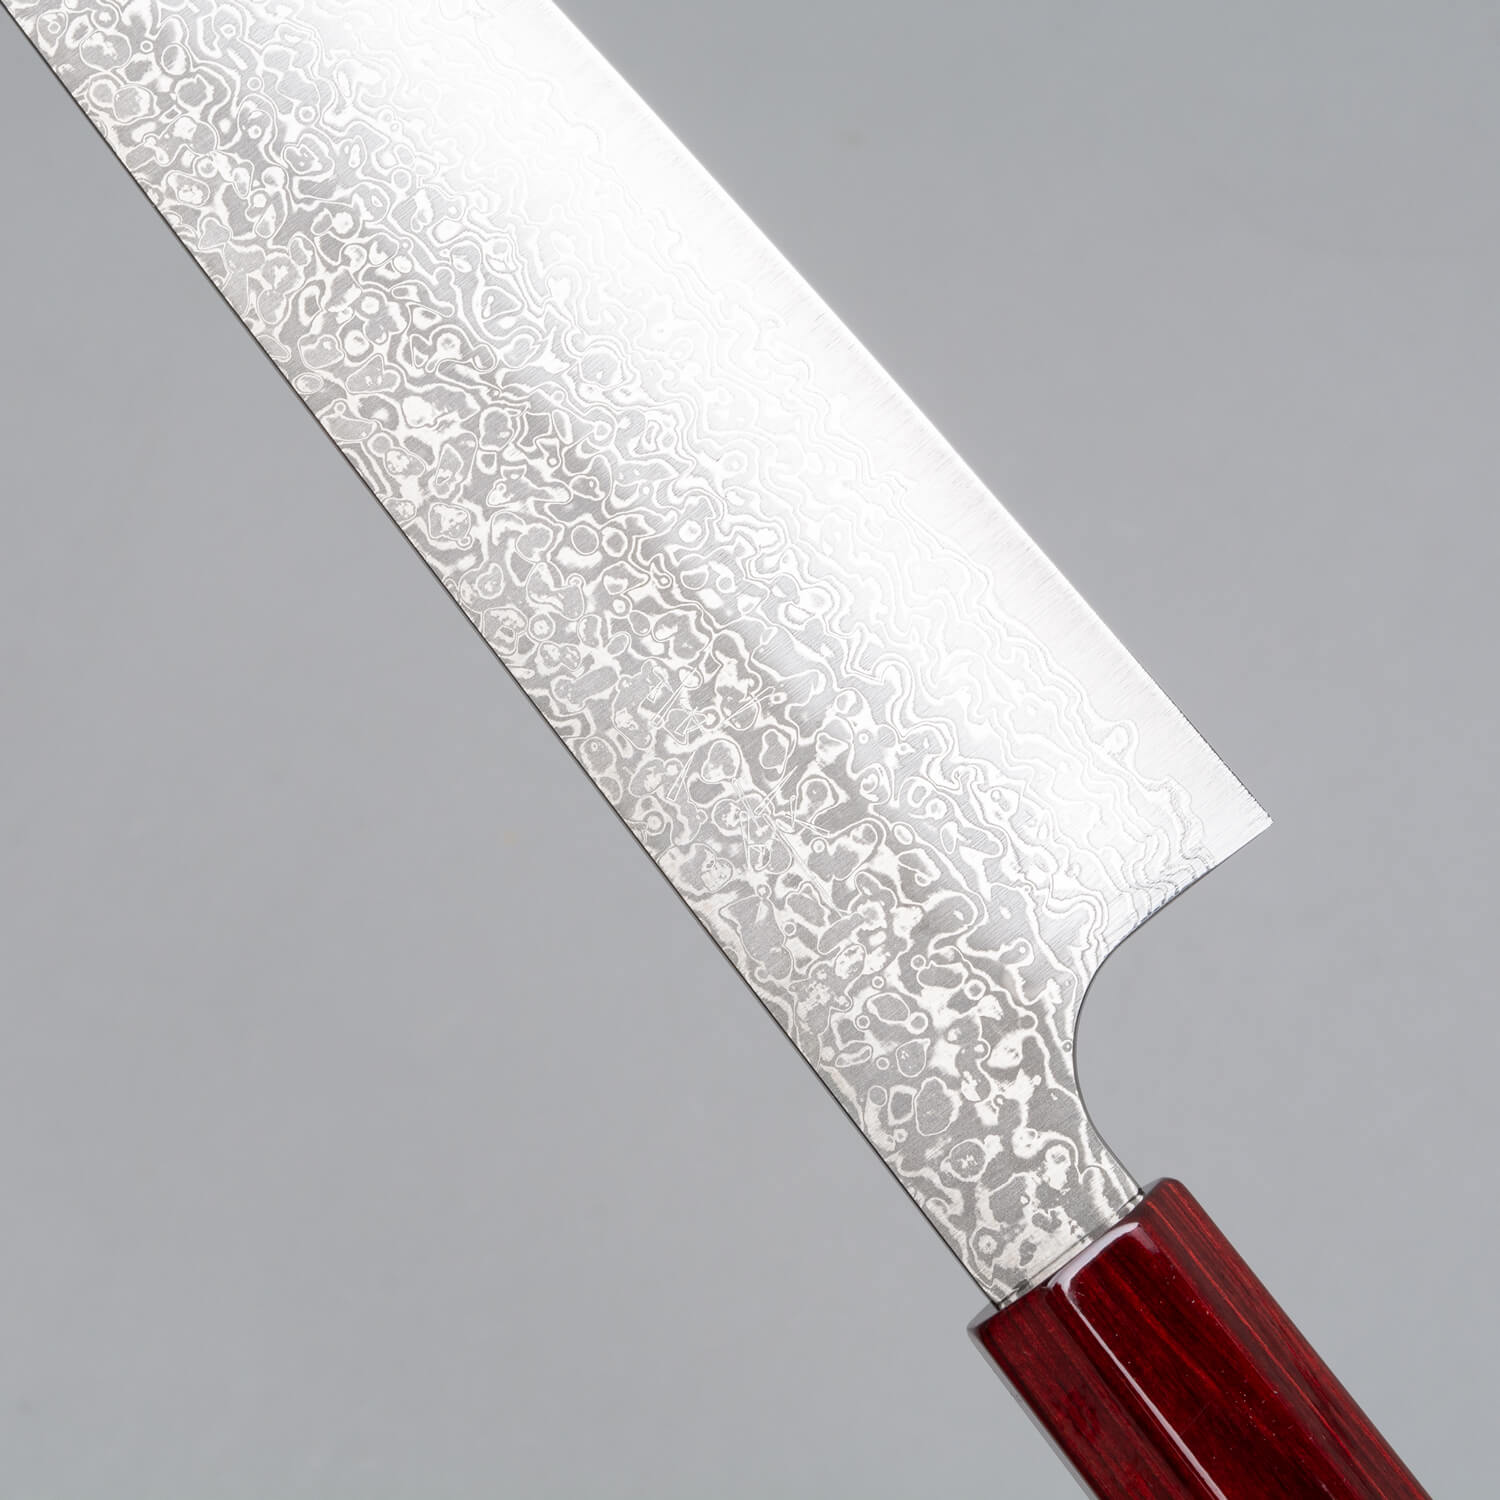 Kei Kobayashi R2 Special Finished CS Japanese Chef's Knife SET